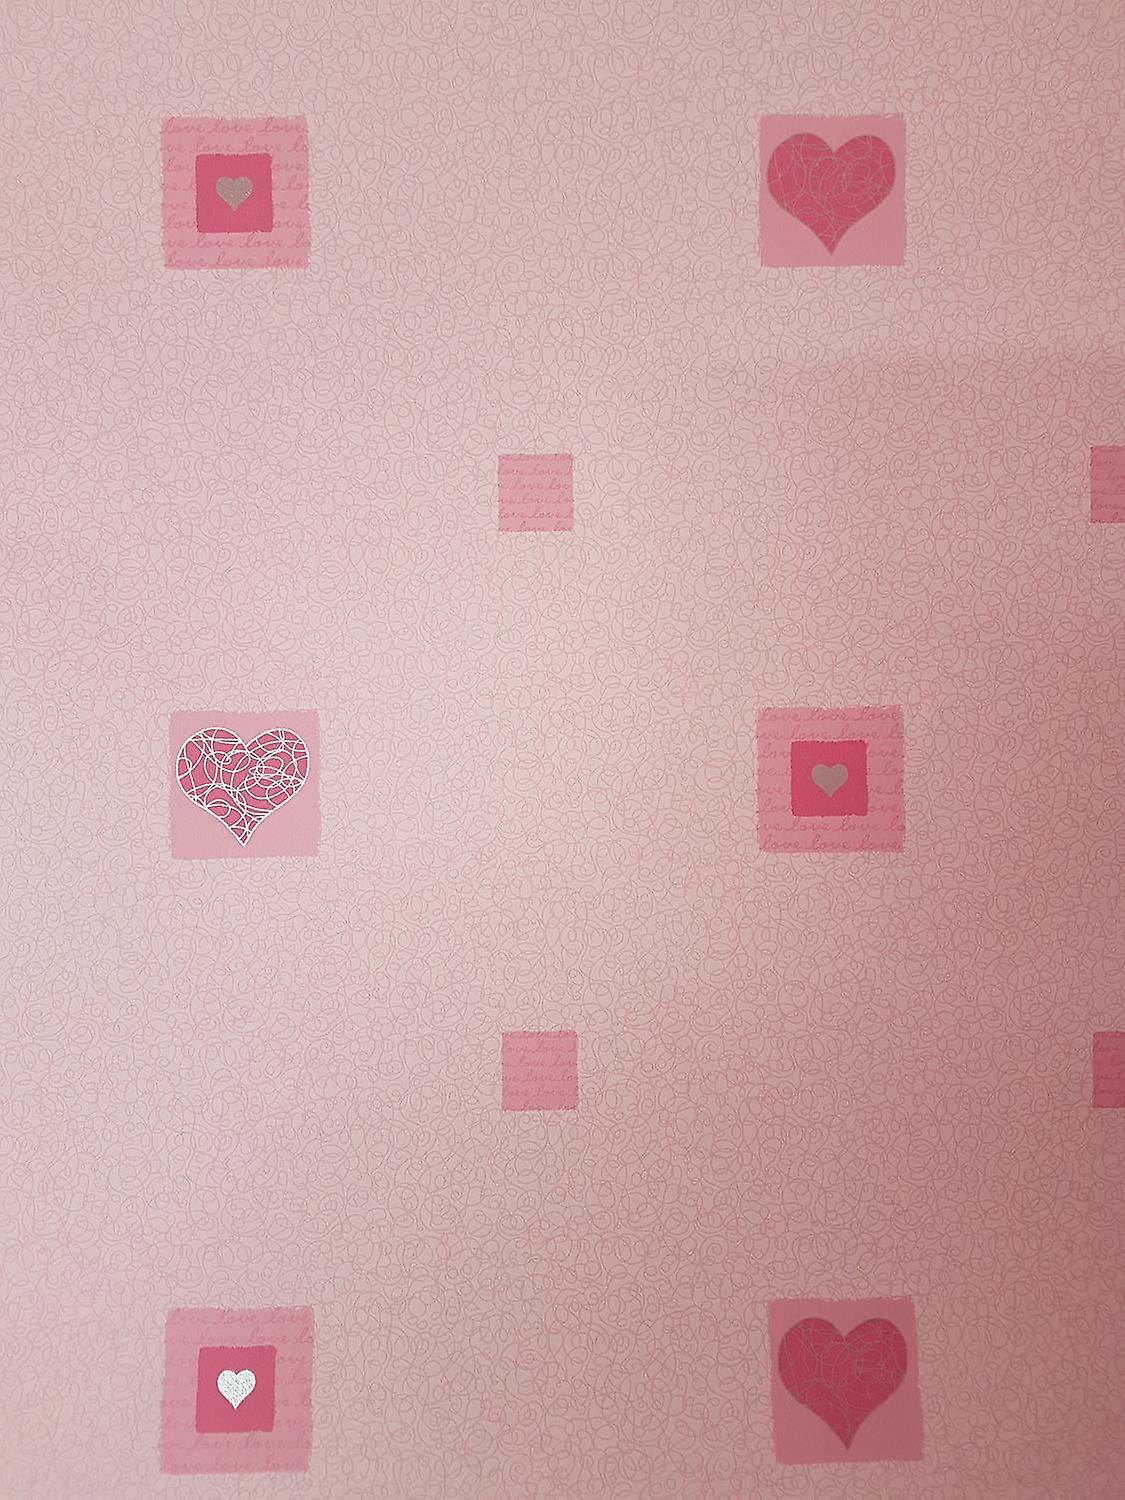 Kids Pink Love Hearts Wallpaper Metallic Silver Swirls - Heart - HD Wallpaper 